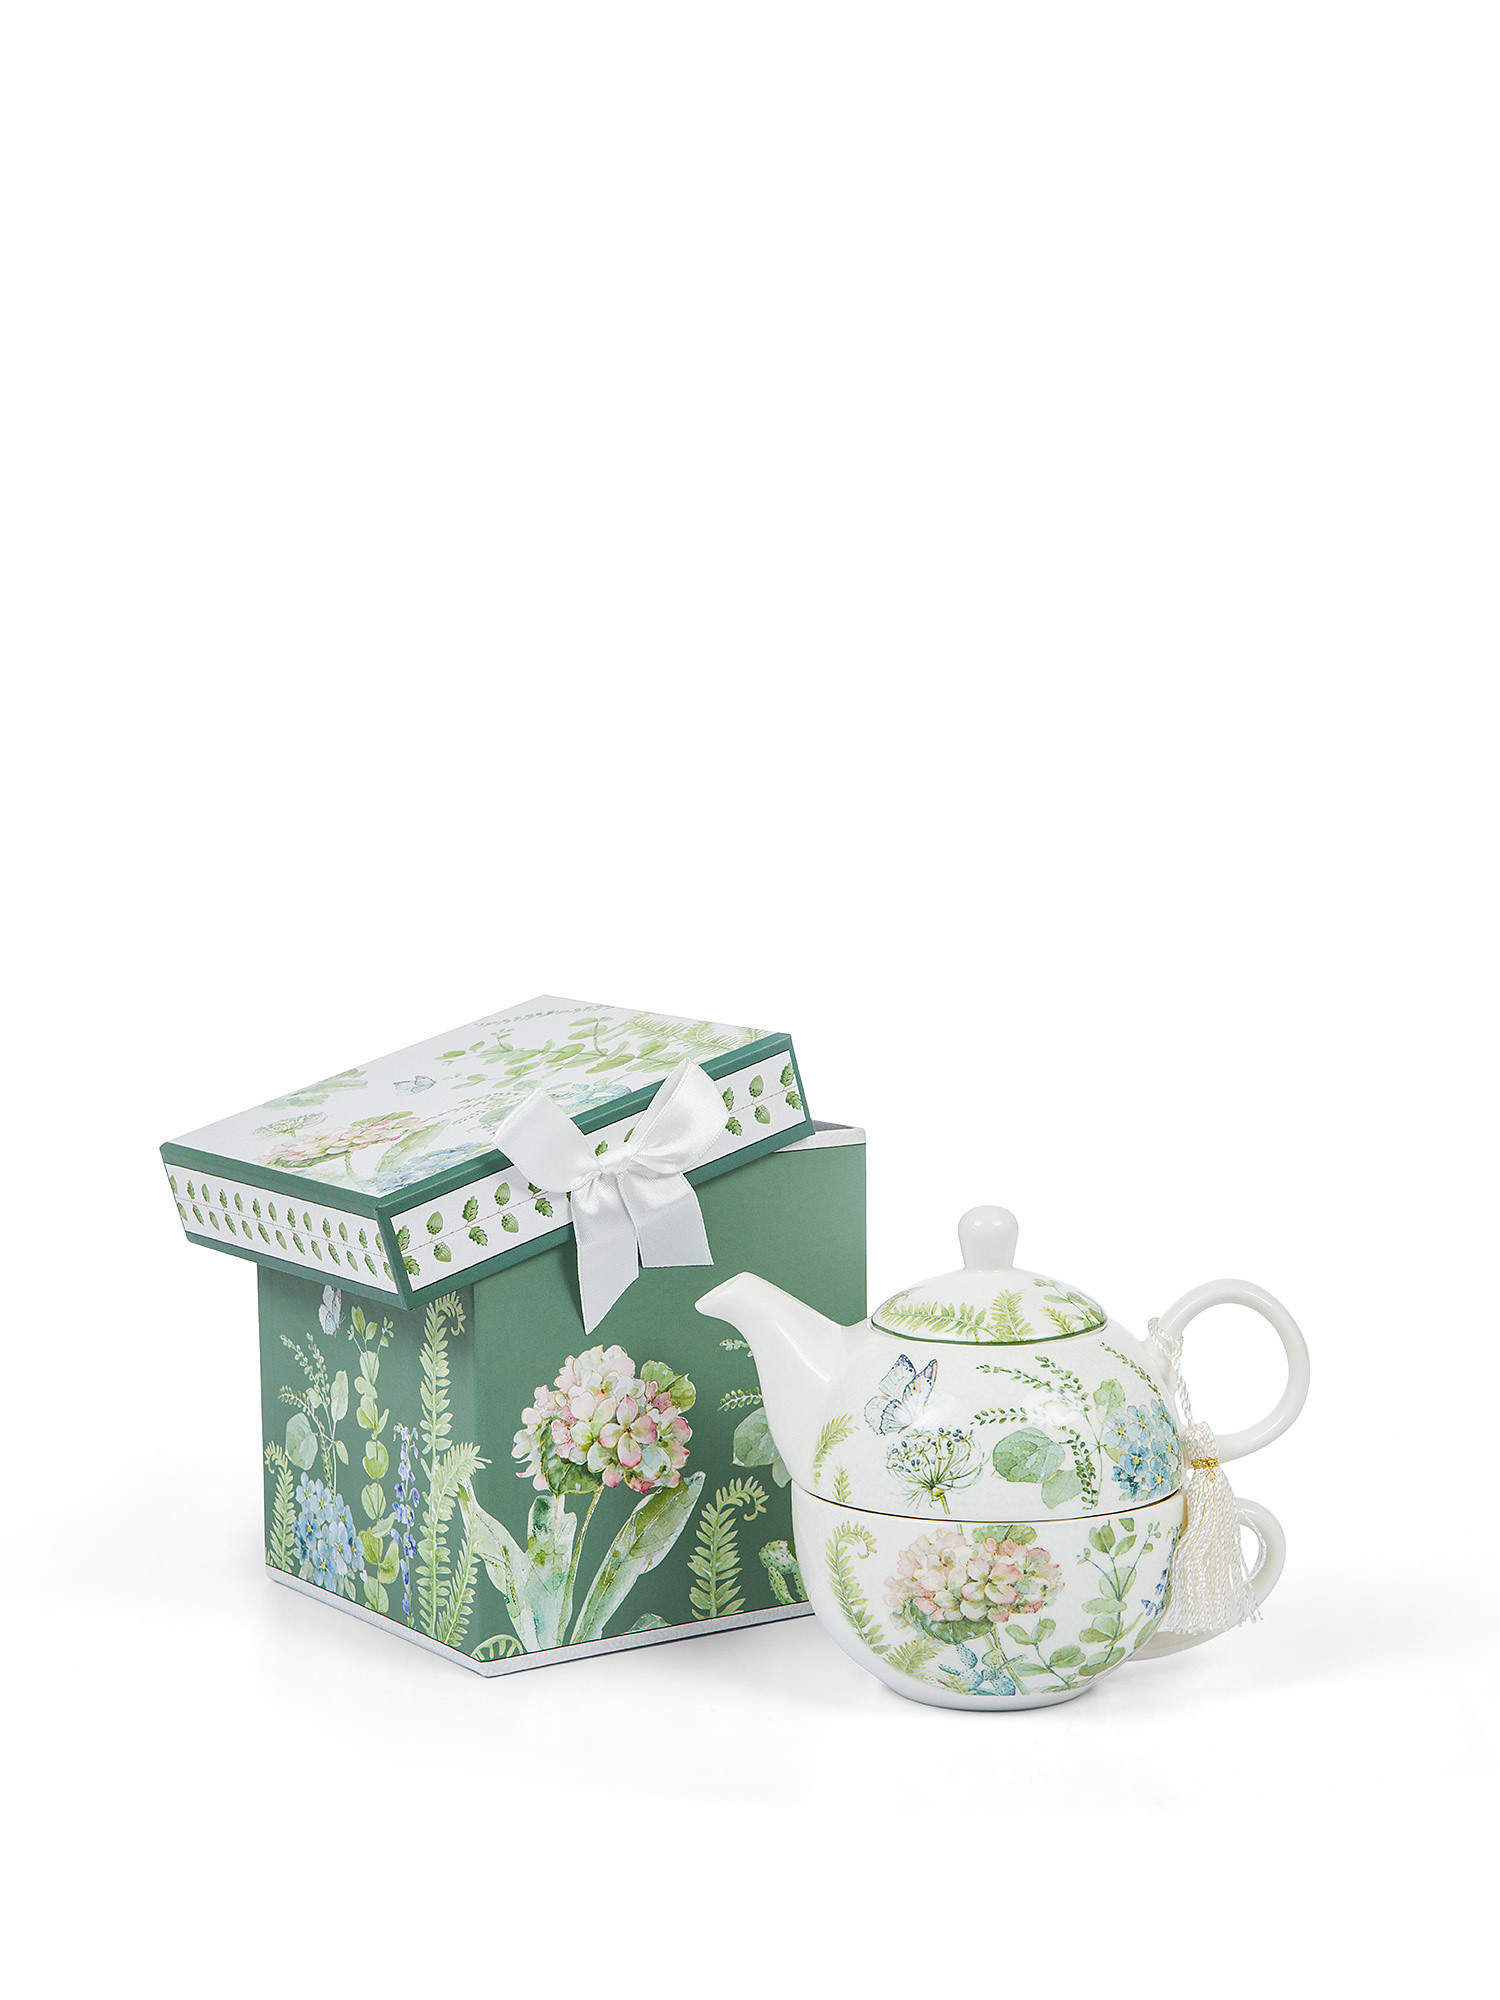 Teaforone new bone china motivo botanico, Multicolor, large image number 0